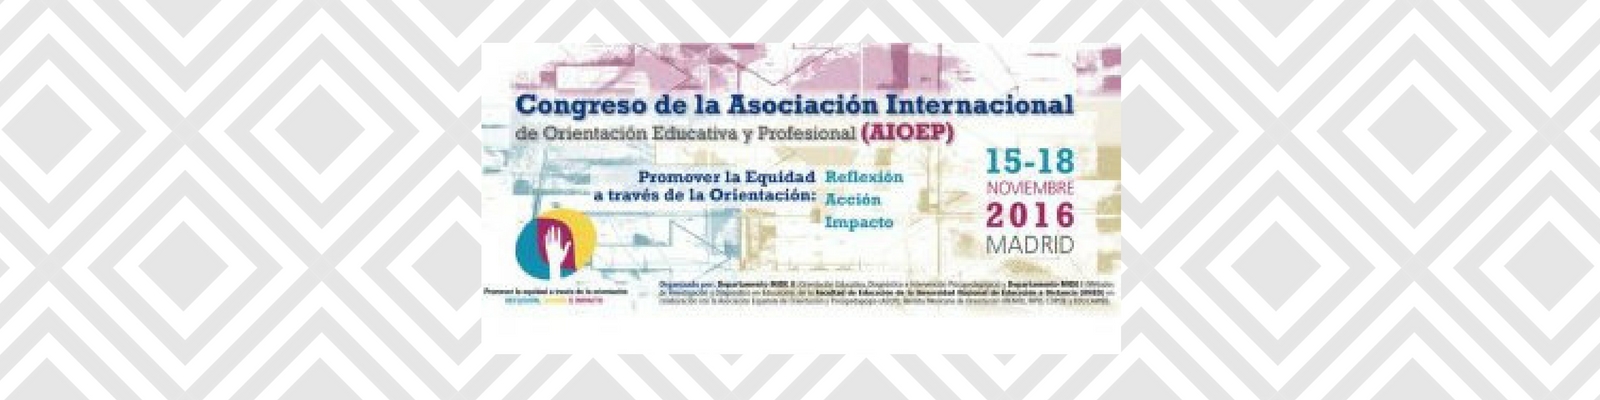 Congreso Internacional de Orientación Educativa y Profesional AIOEP